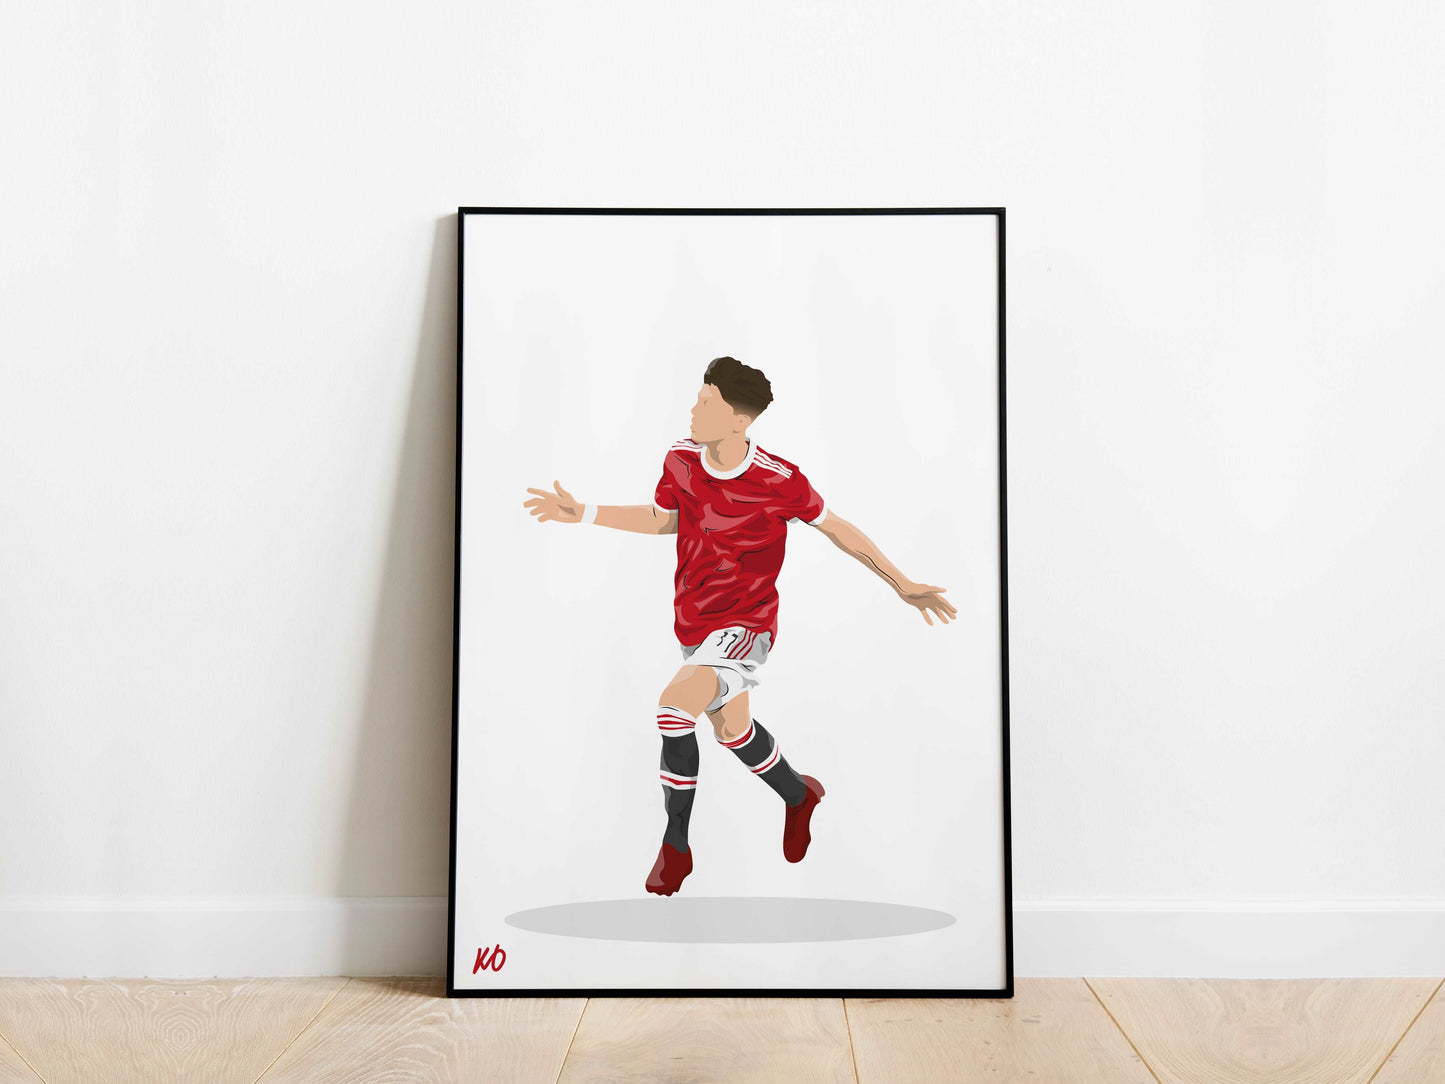 Alejandro Garnacho Manchester United Poster